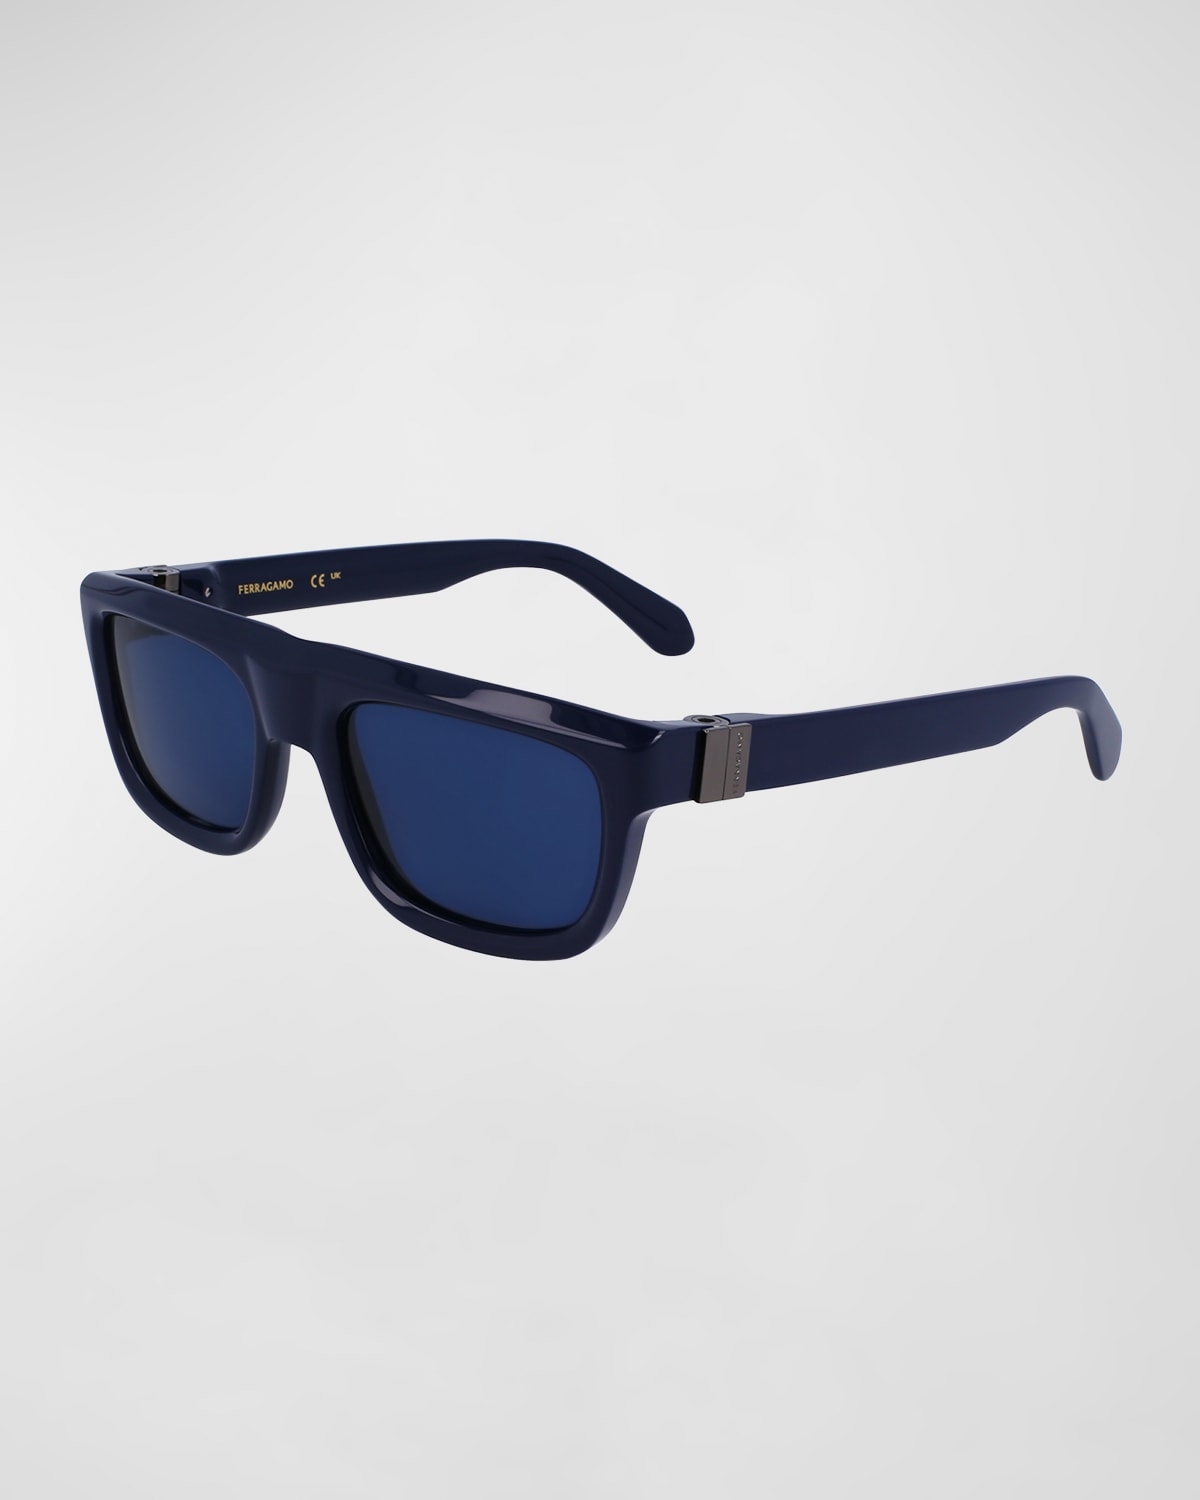 Men's Prisma Acetate Square Sunglasses, 56mm